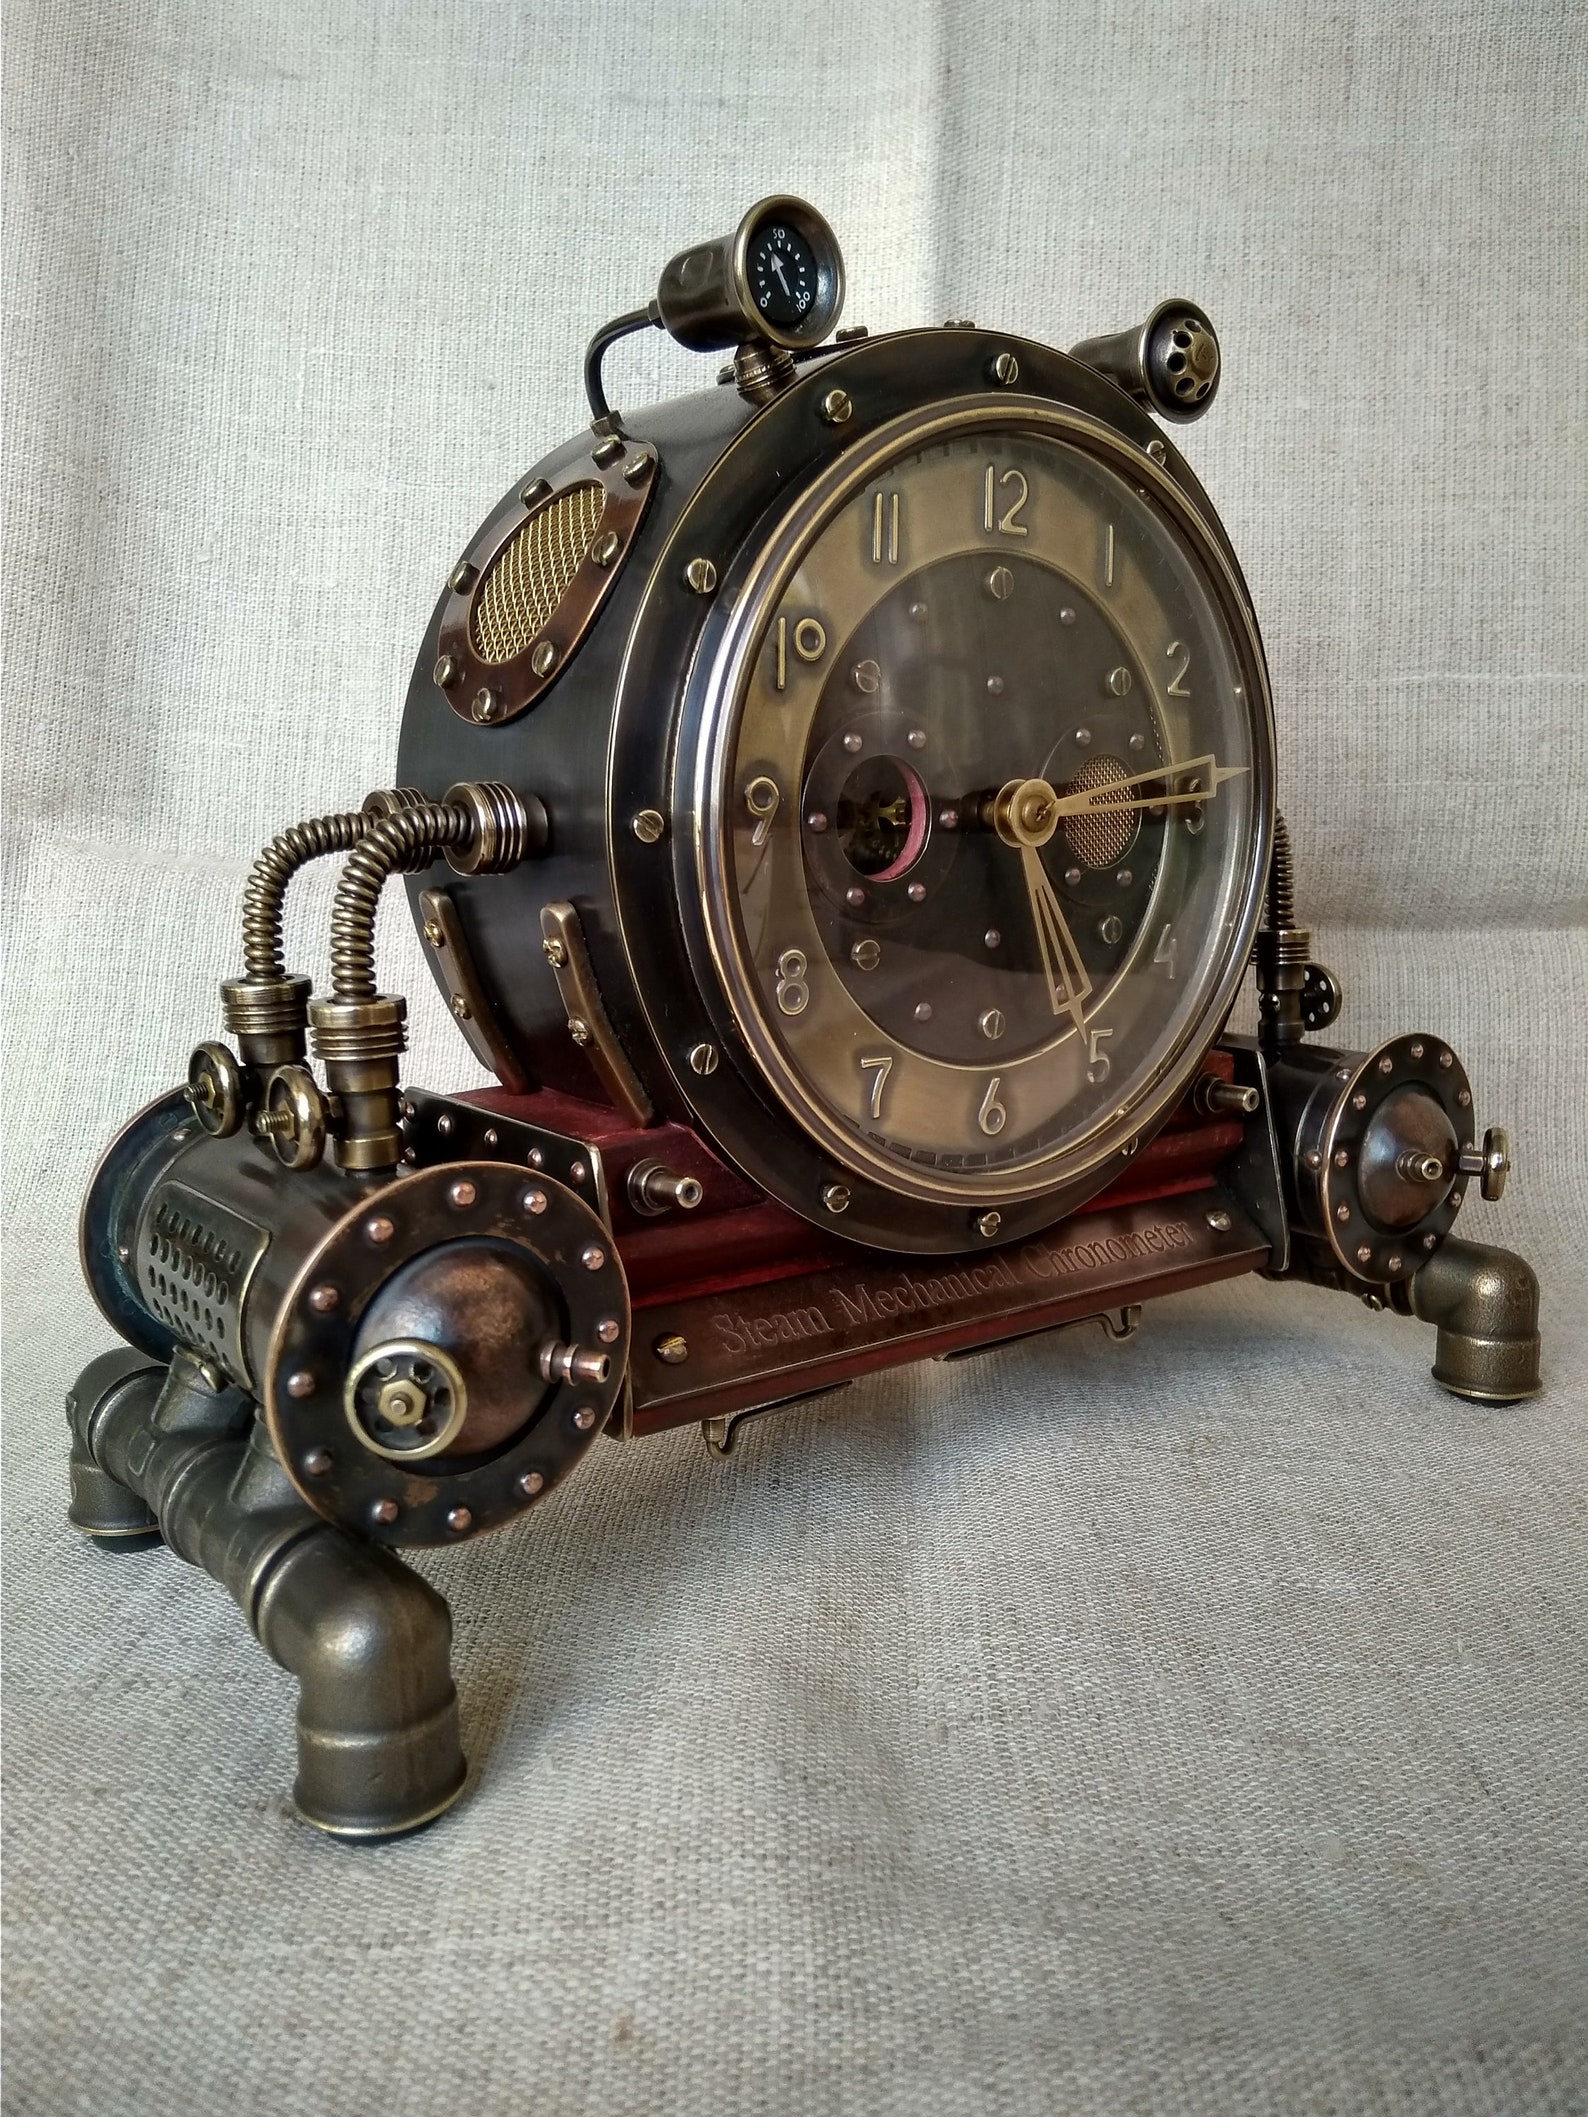 Steam часы фото 65